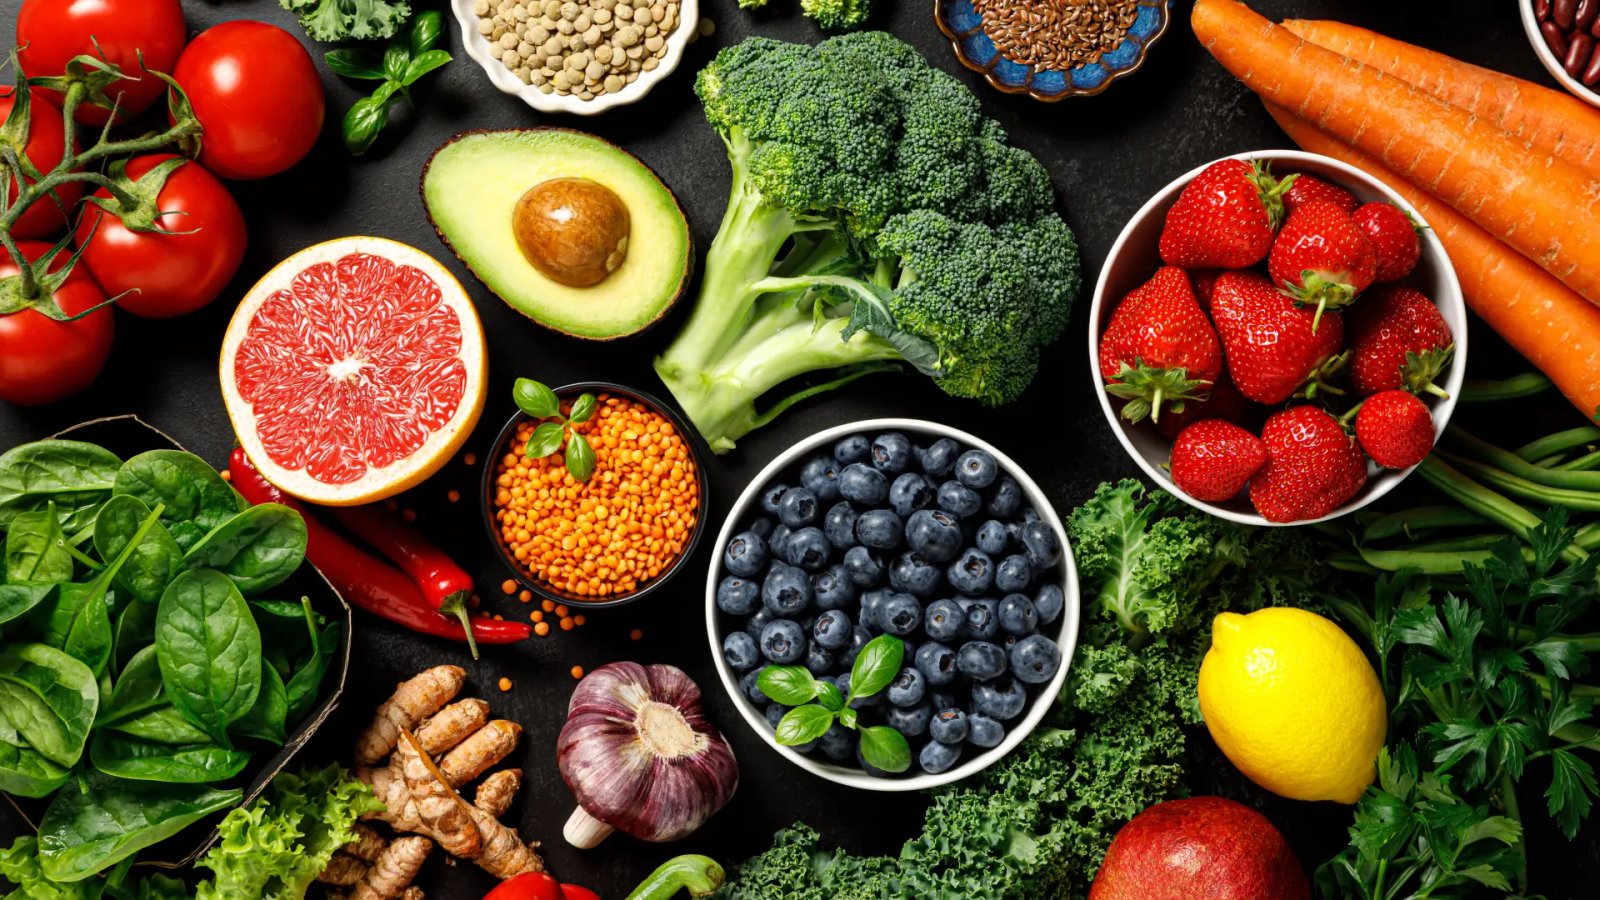 Frutas y verduras ricas en antioxidantes